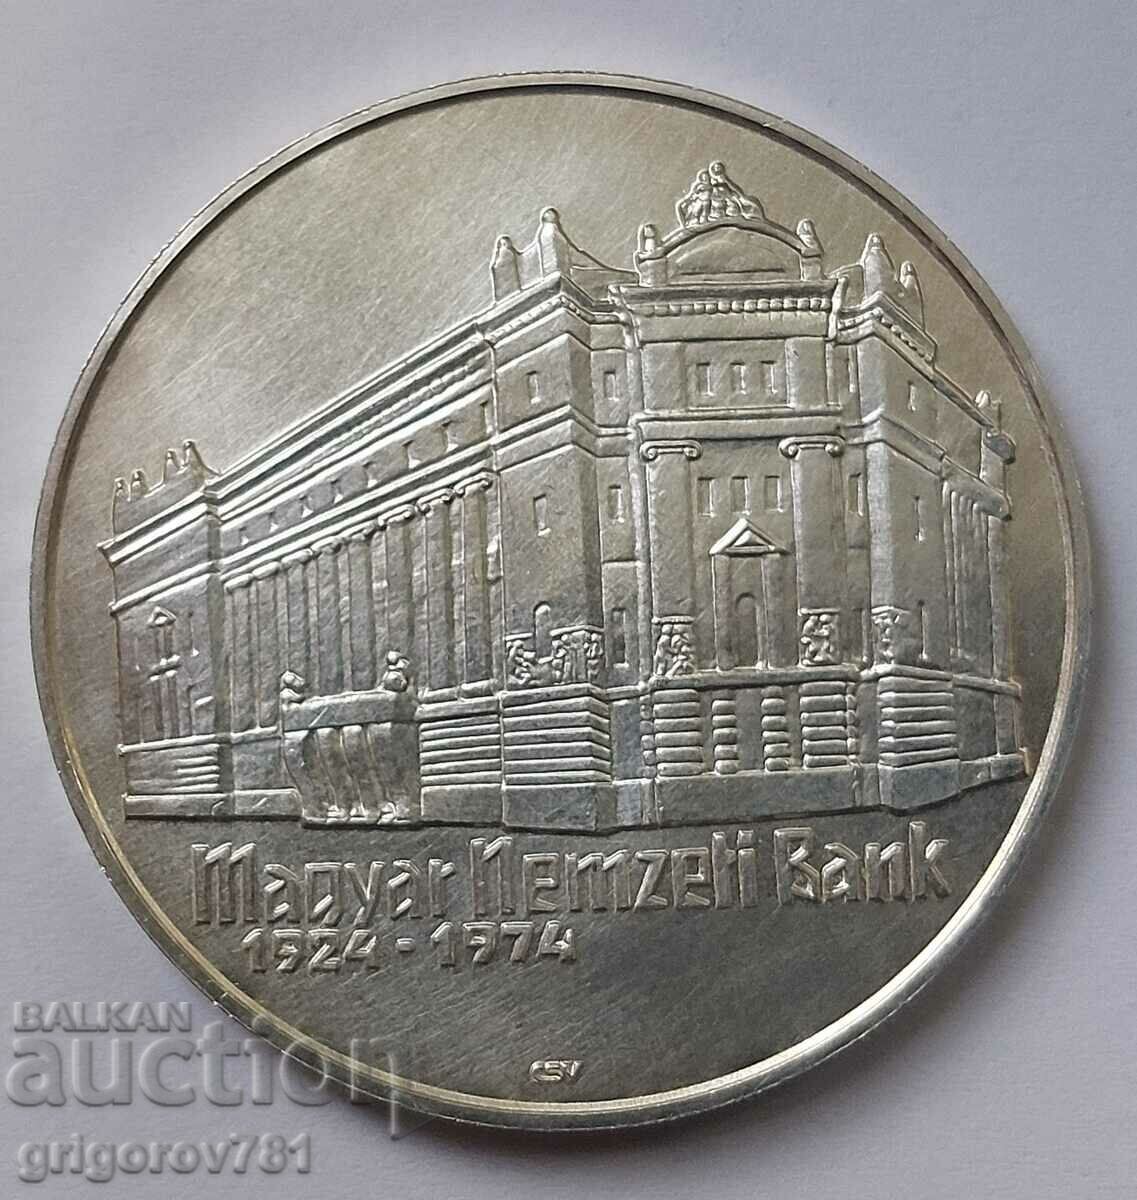 Ασήμι 50 φιορίνι Ουγγαρία 1974 - ασημένιο νόμισμα